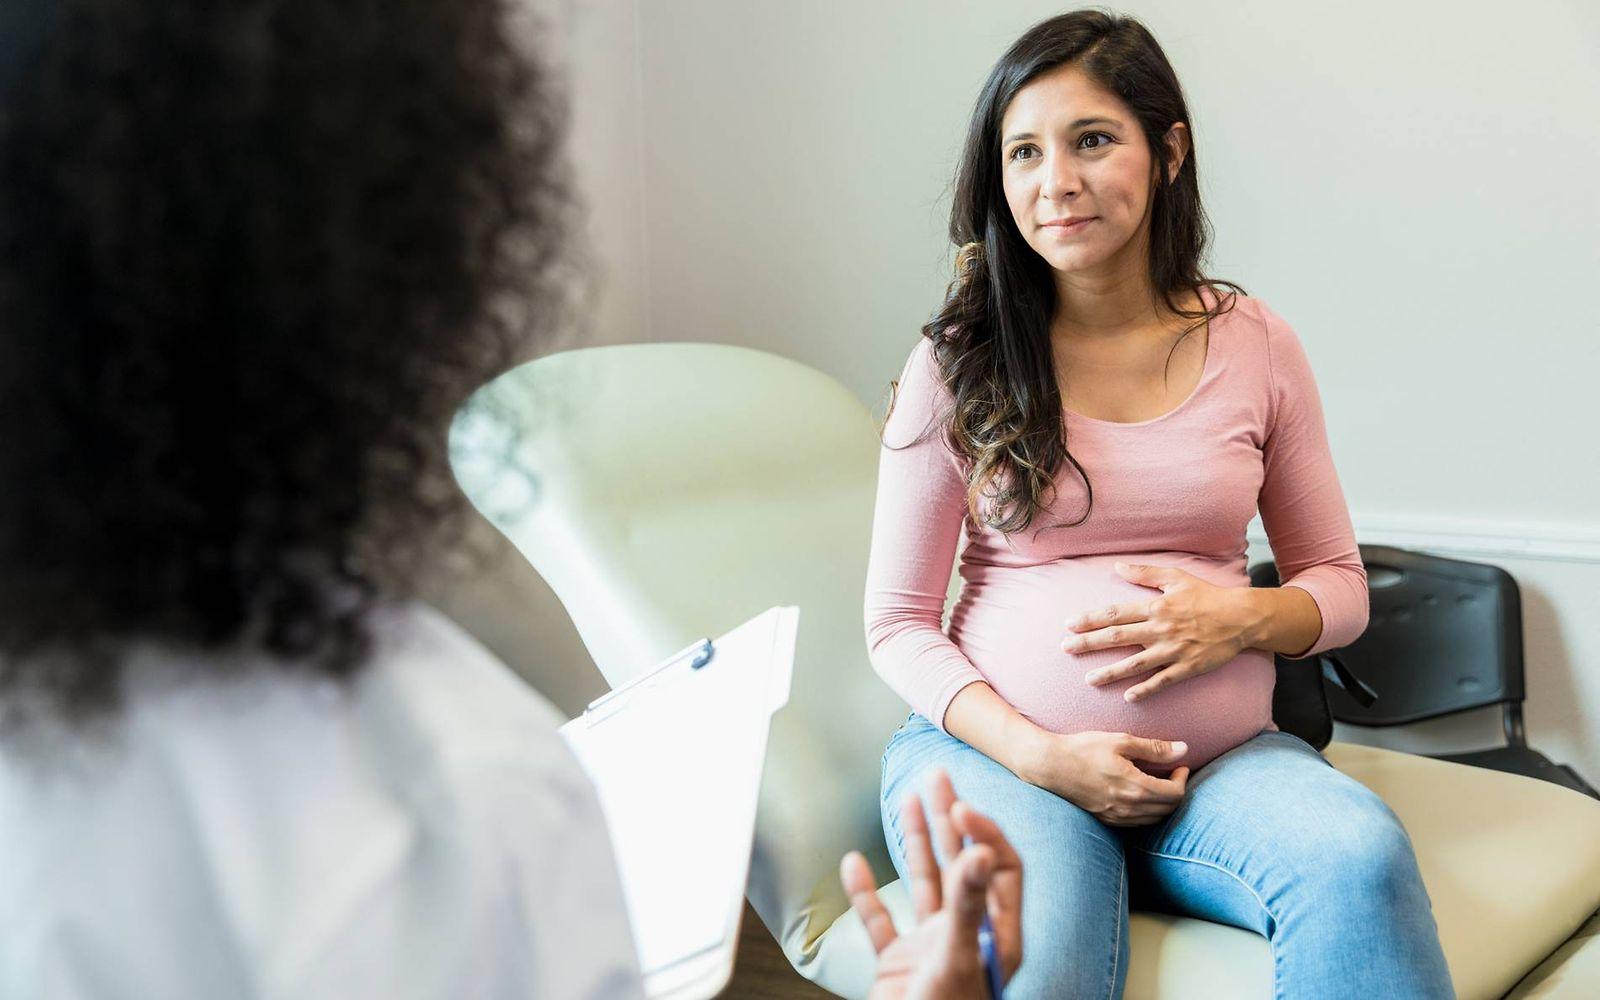 Geburt einleiten: Schwangere spricht mit Ärztin